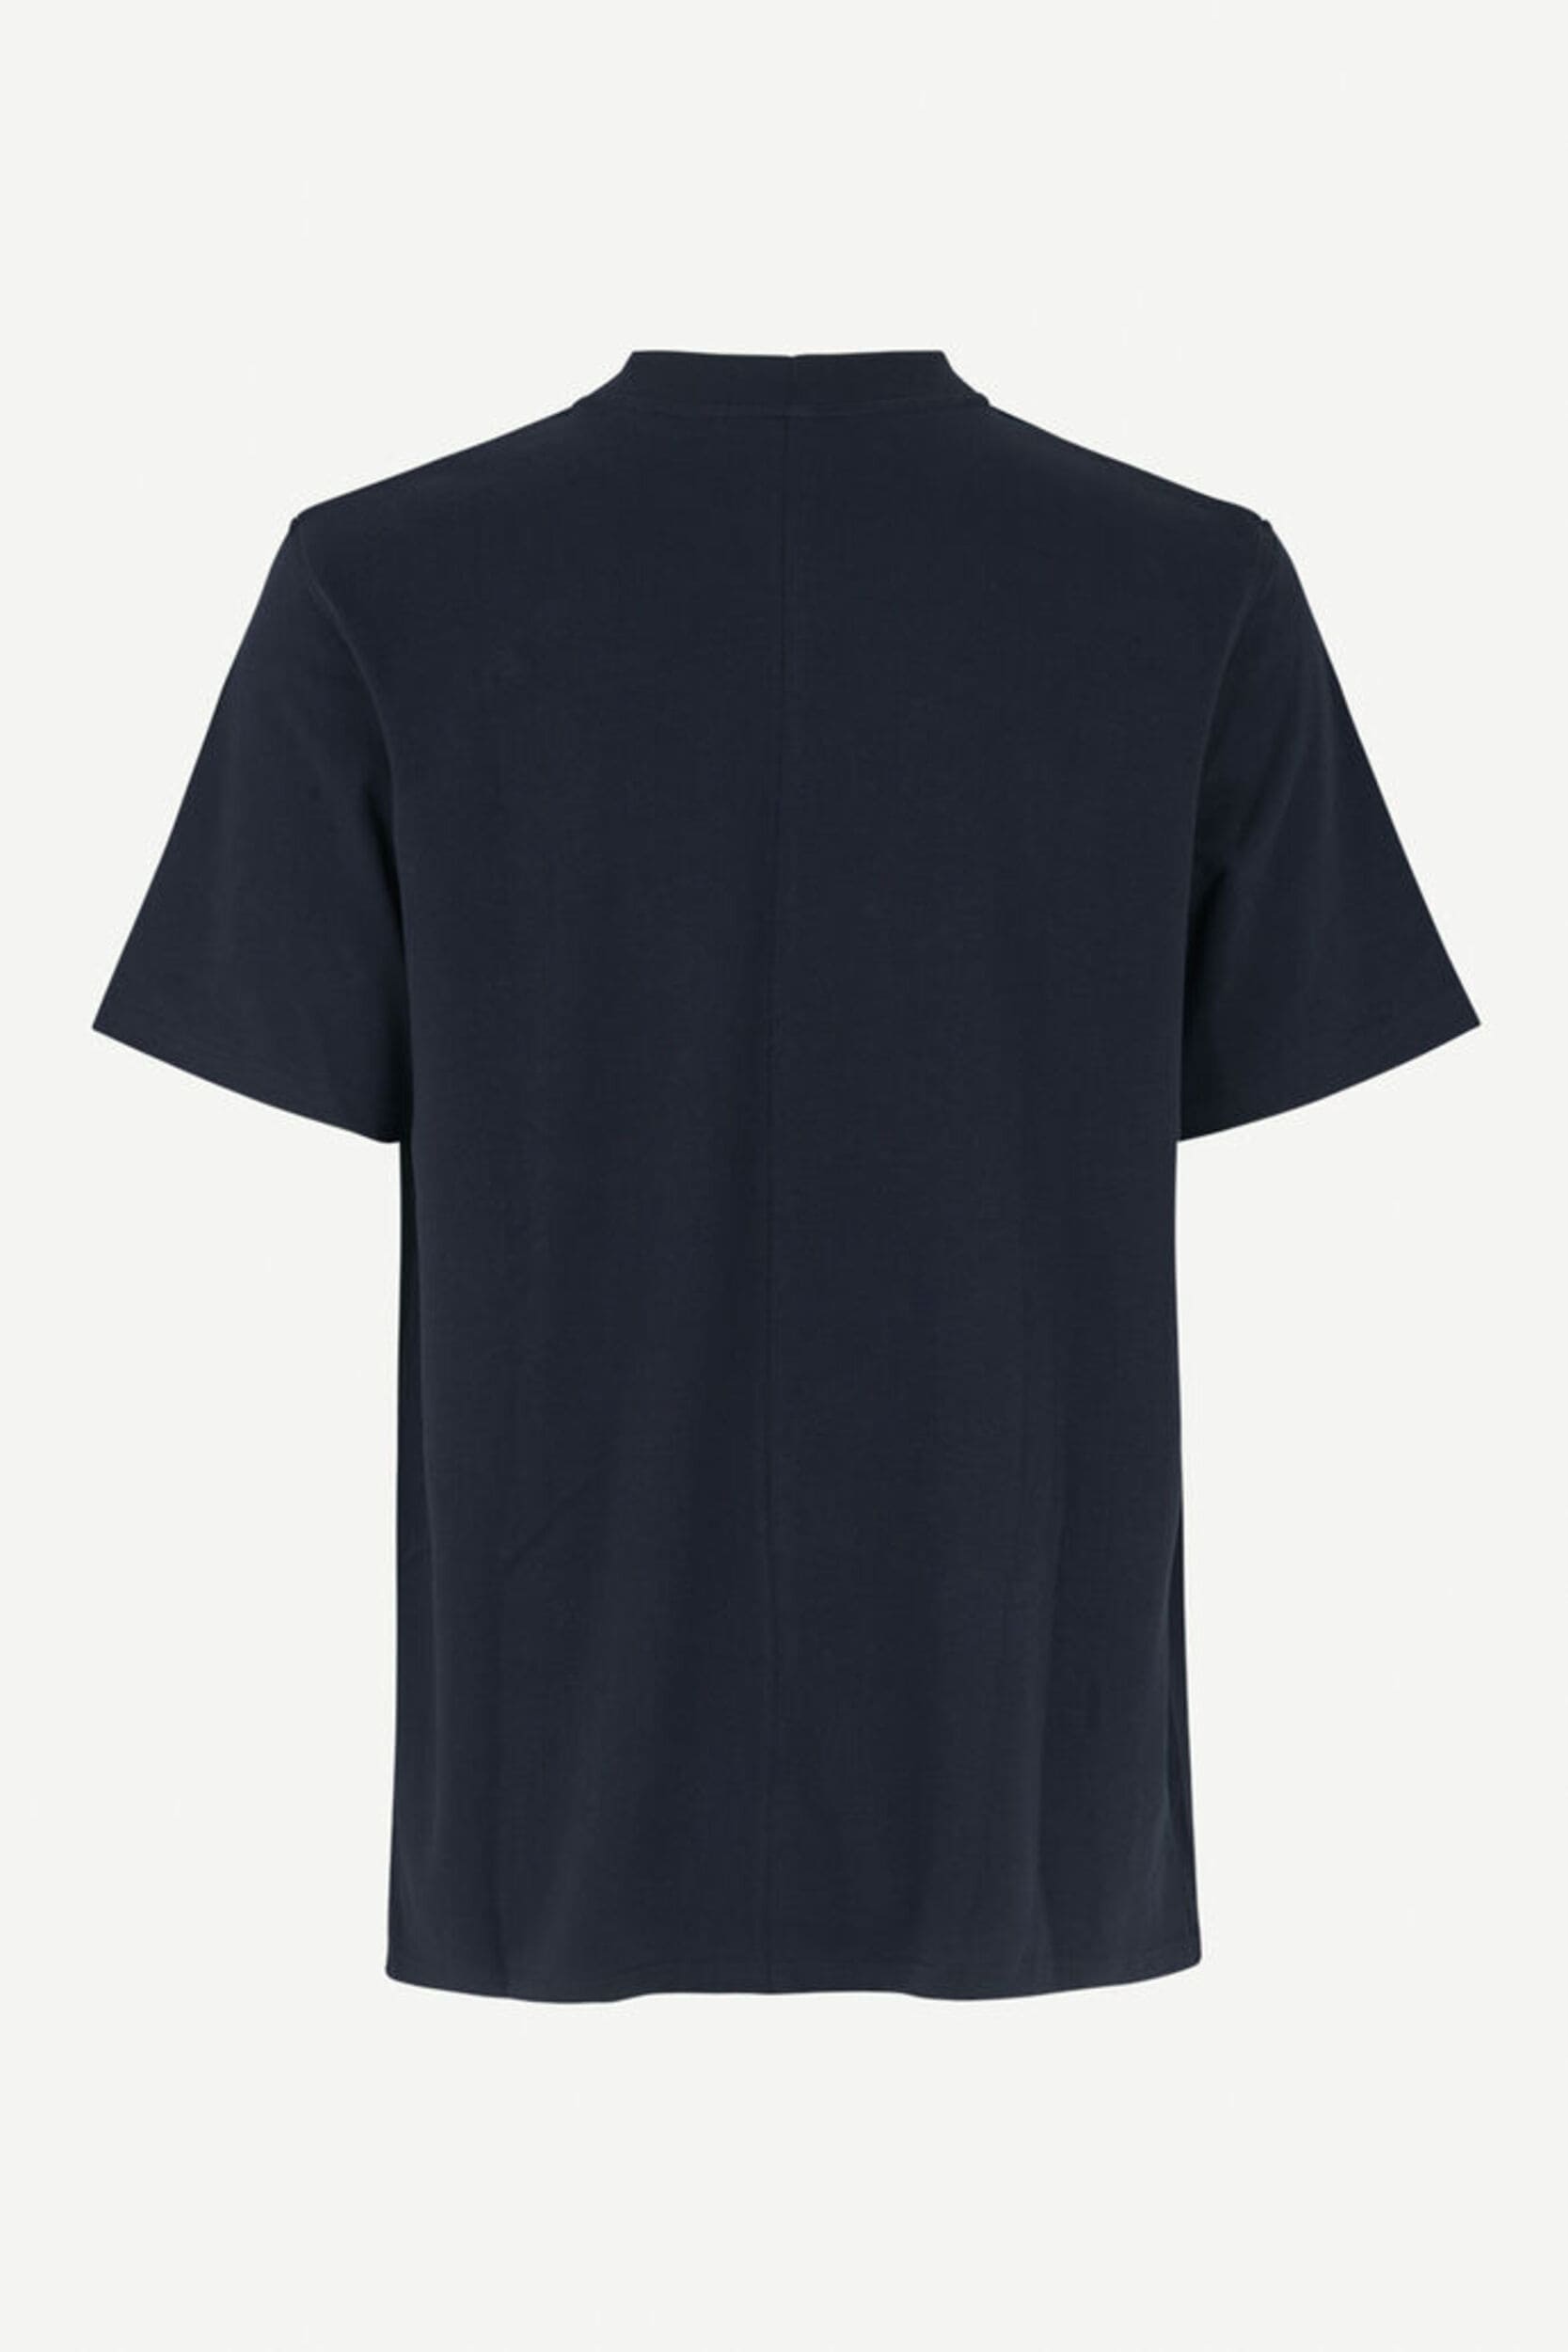 T-shirt Norsbro de la marque Samsoe Samsoe pour homme couleur sky captain de dos